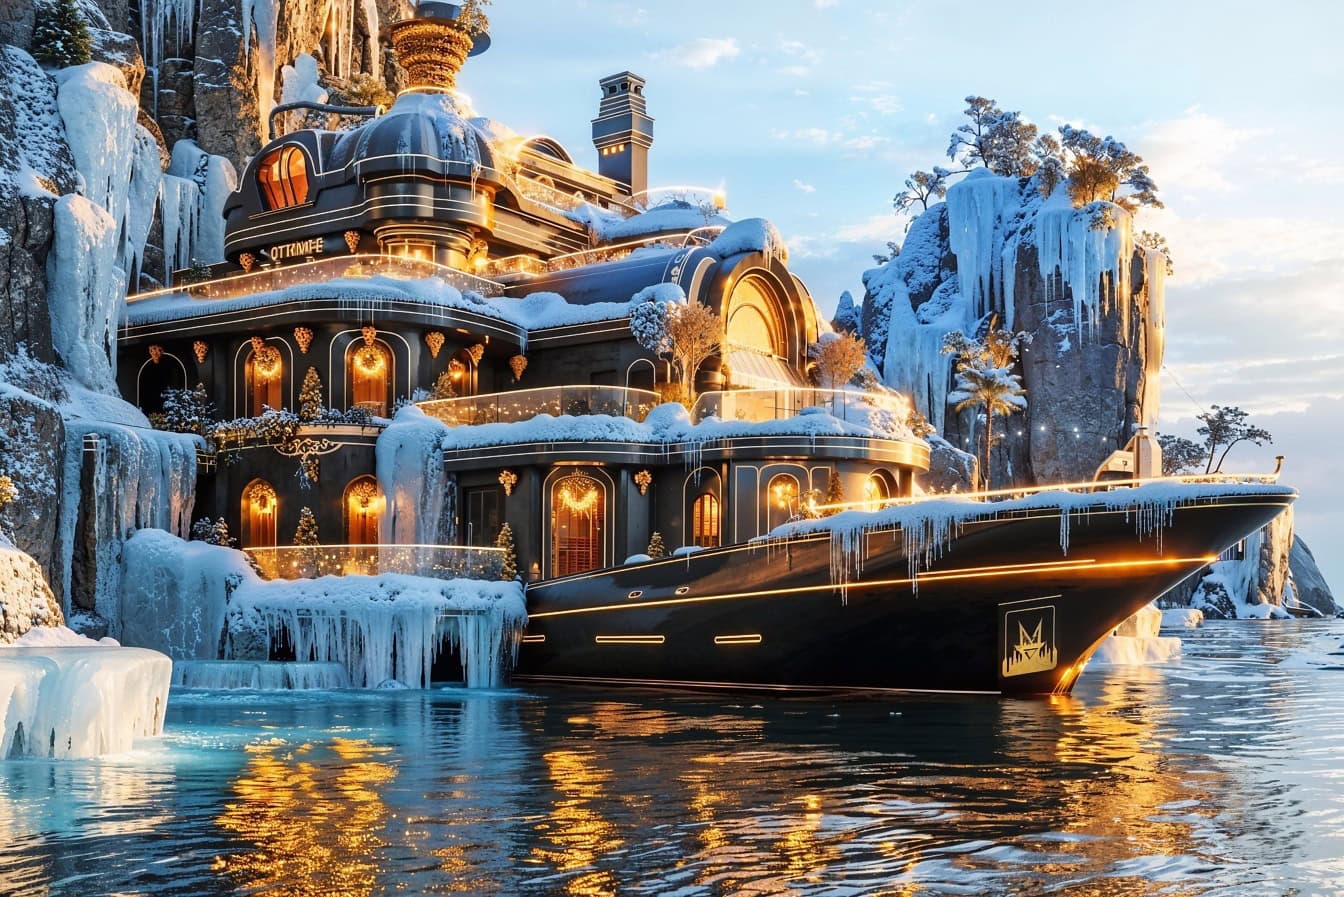 Concept futuriste d’un super yacht dans un environnement gelé, photomontage d’une station d’hiver en bord de mer